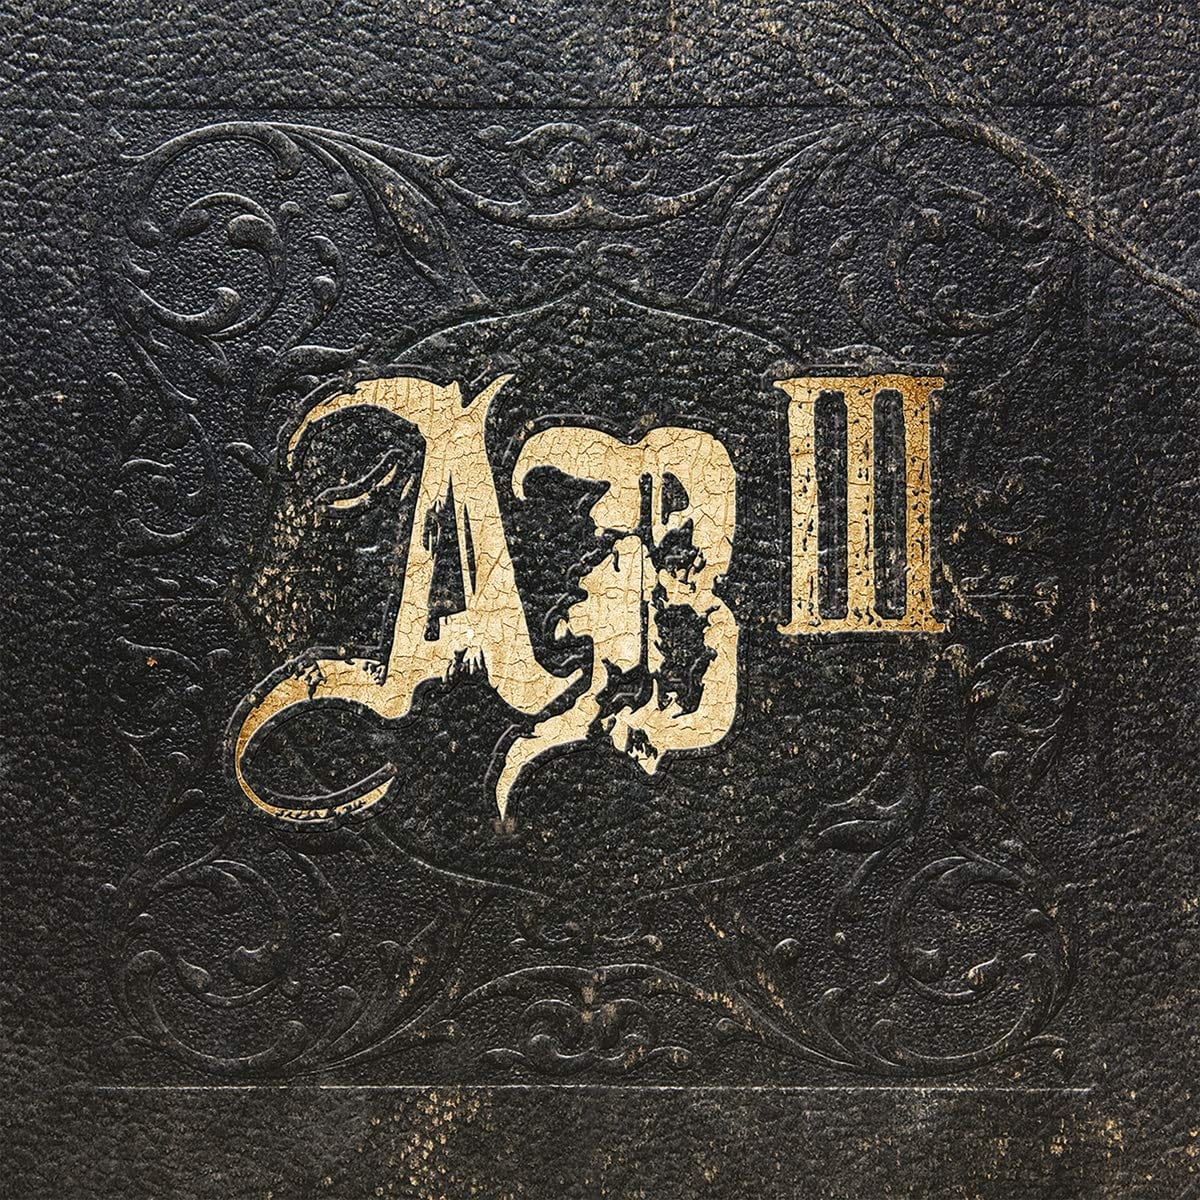 Alter Bridge - Abiii [180-Gram Black Vinyl] [Import]